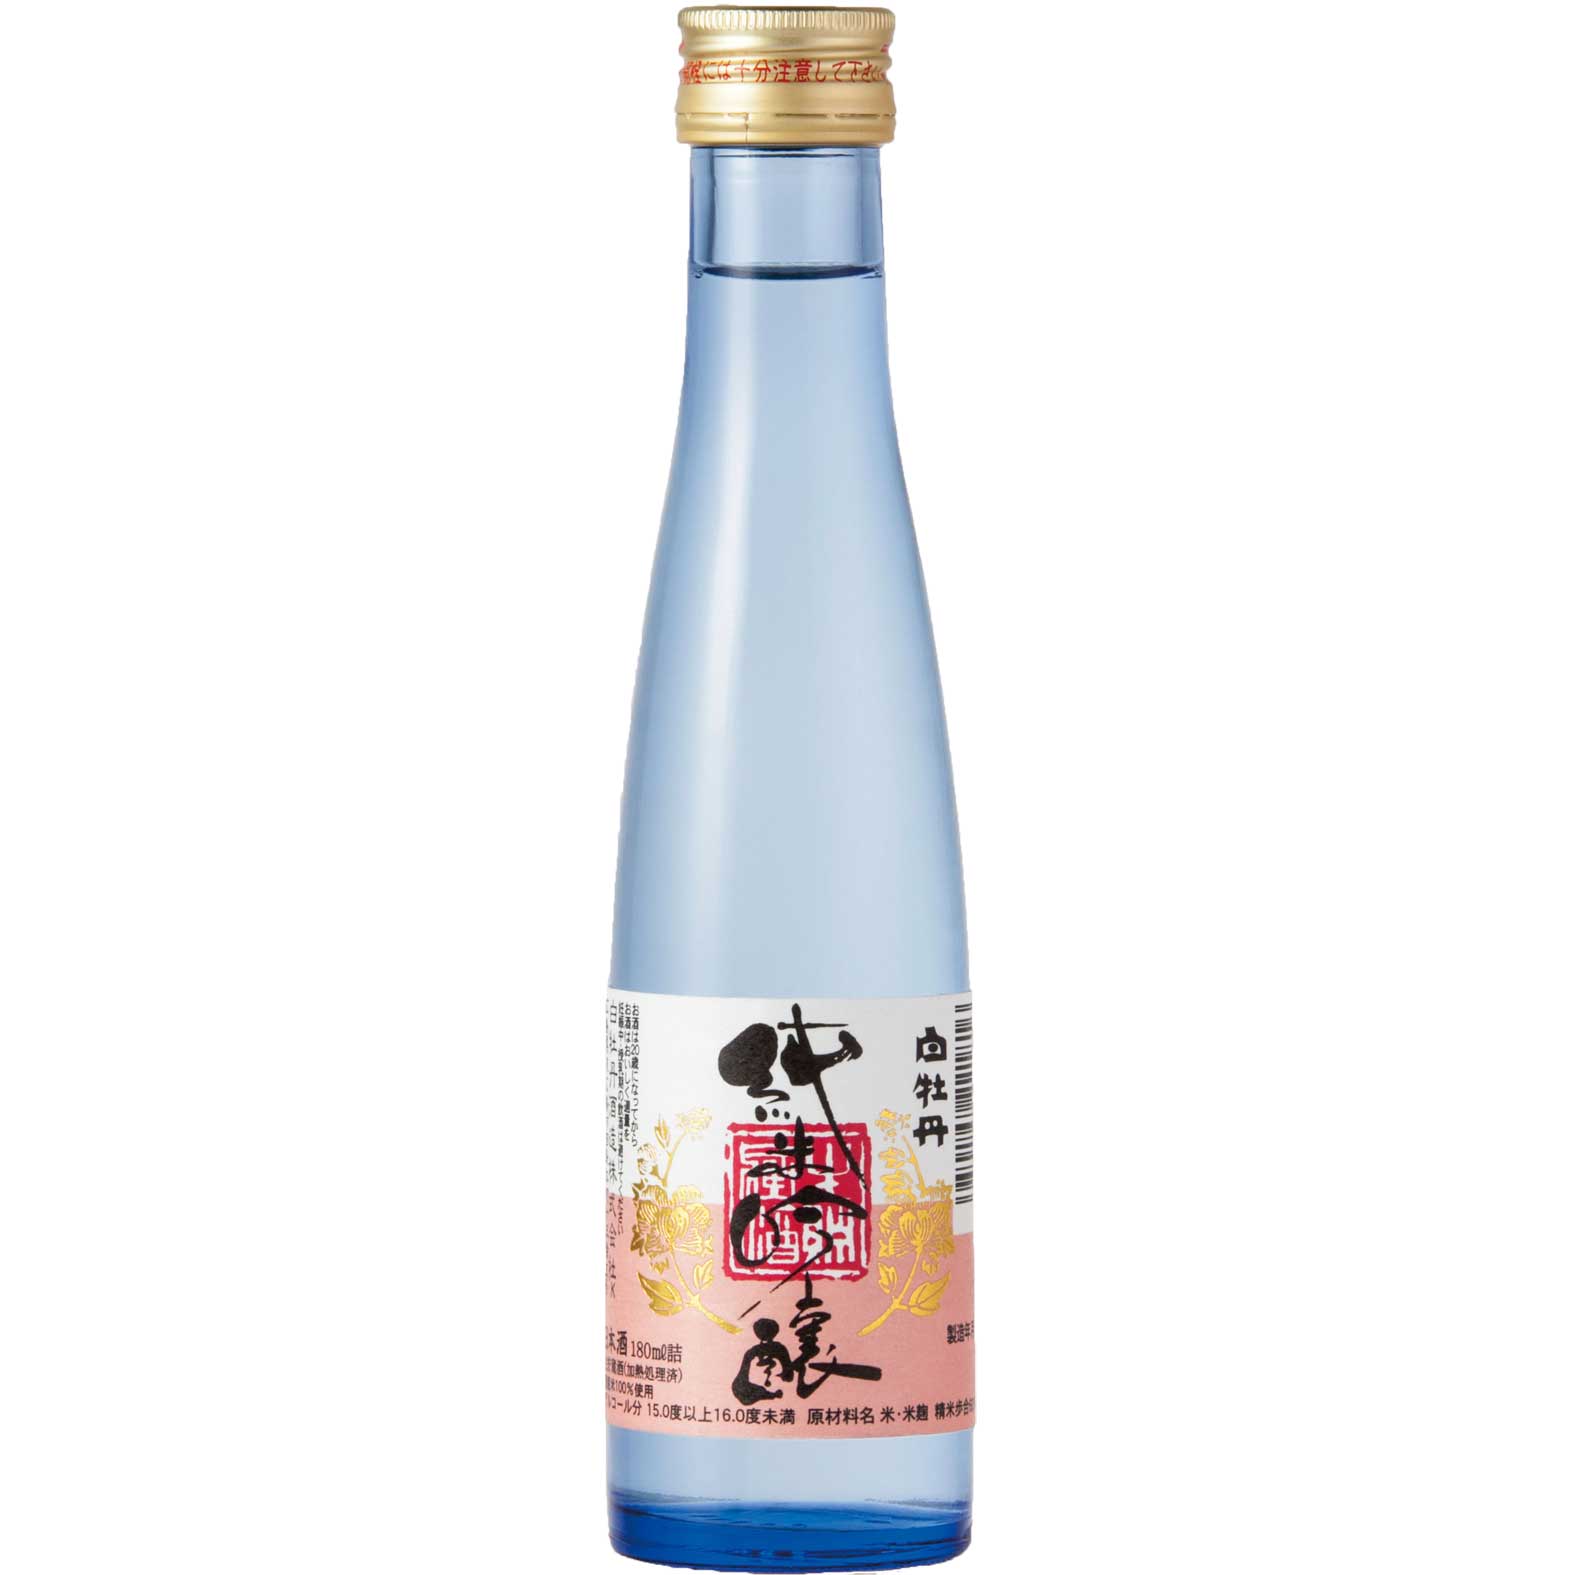 【日本酒 白牡丹】純米吟醸 生貯蔵酒 180ml瓶詰